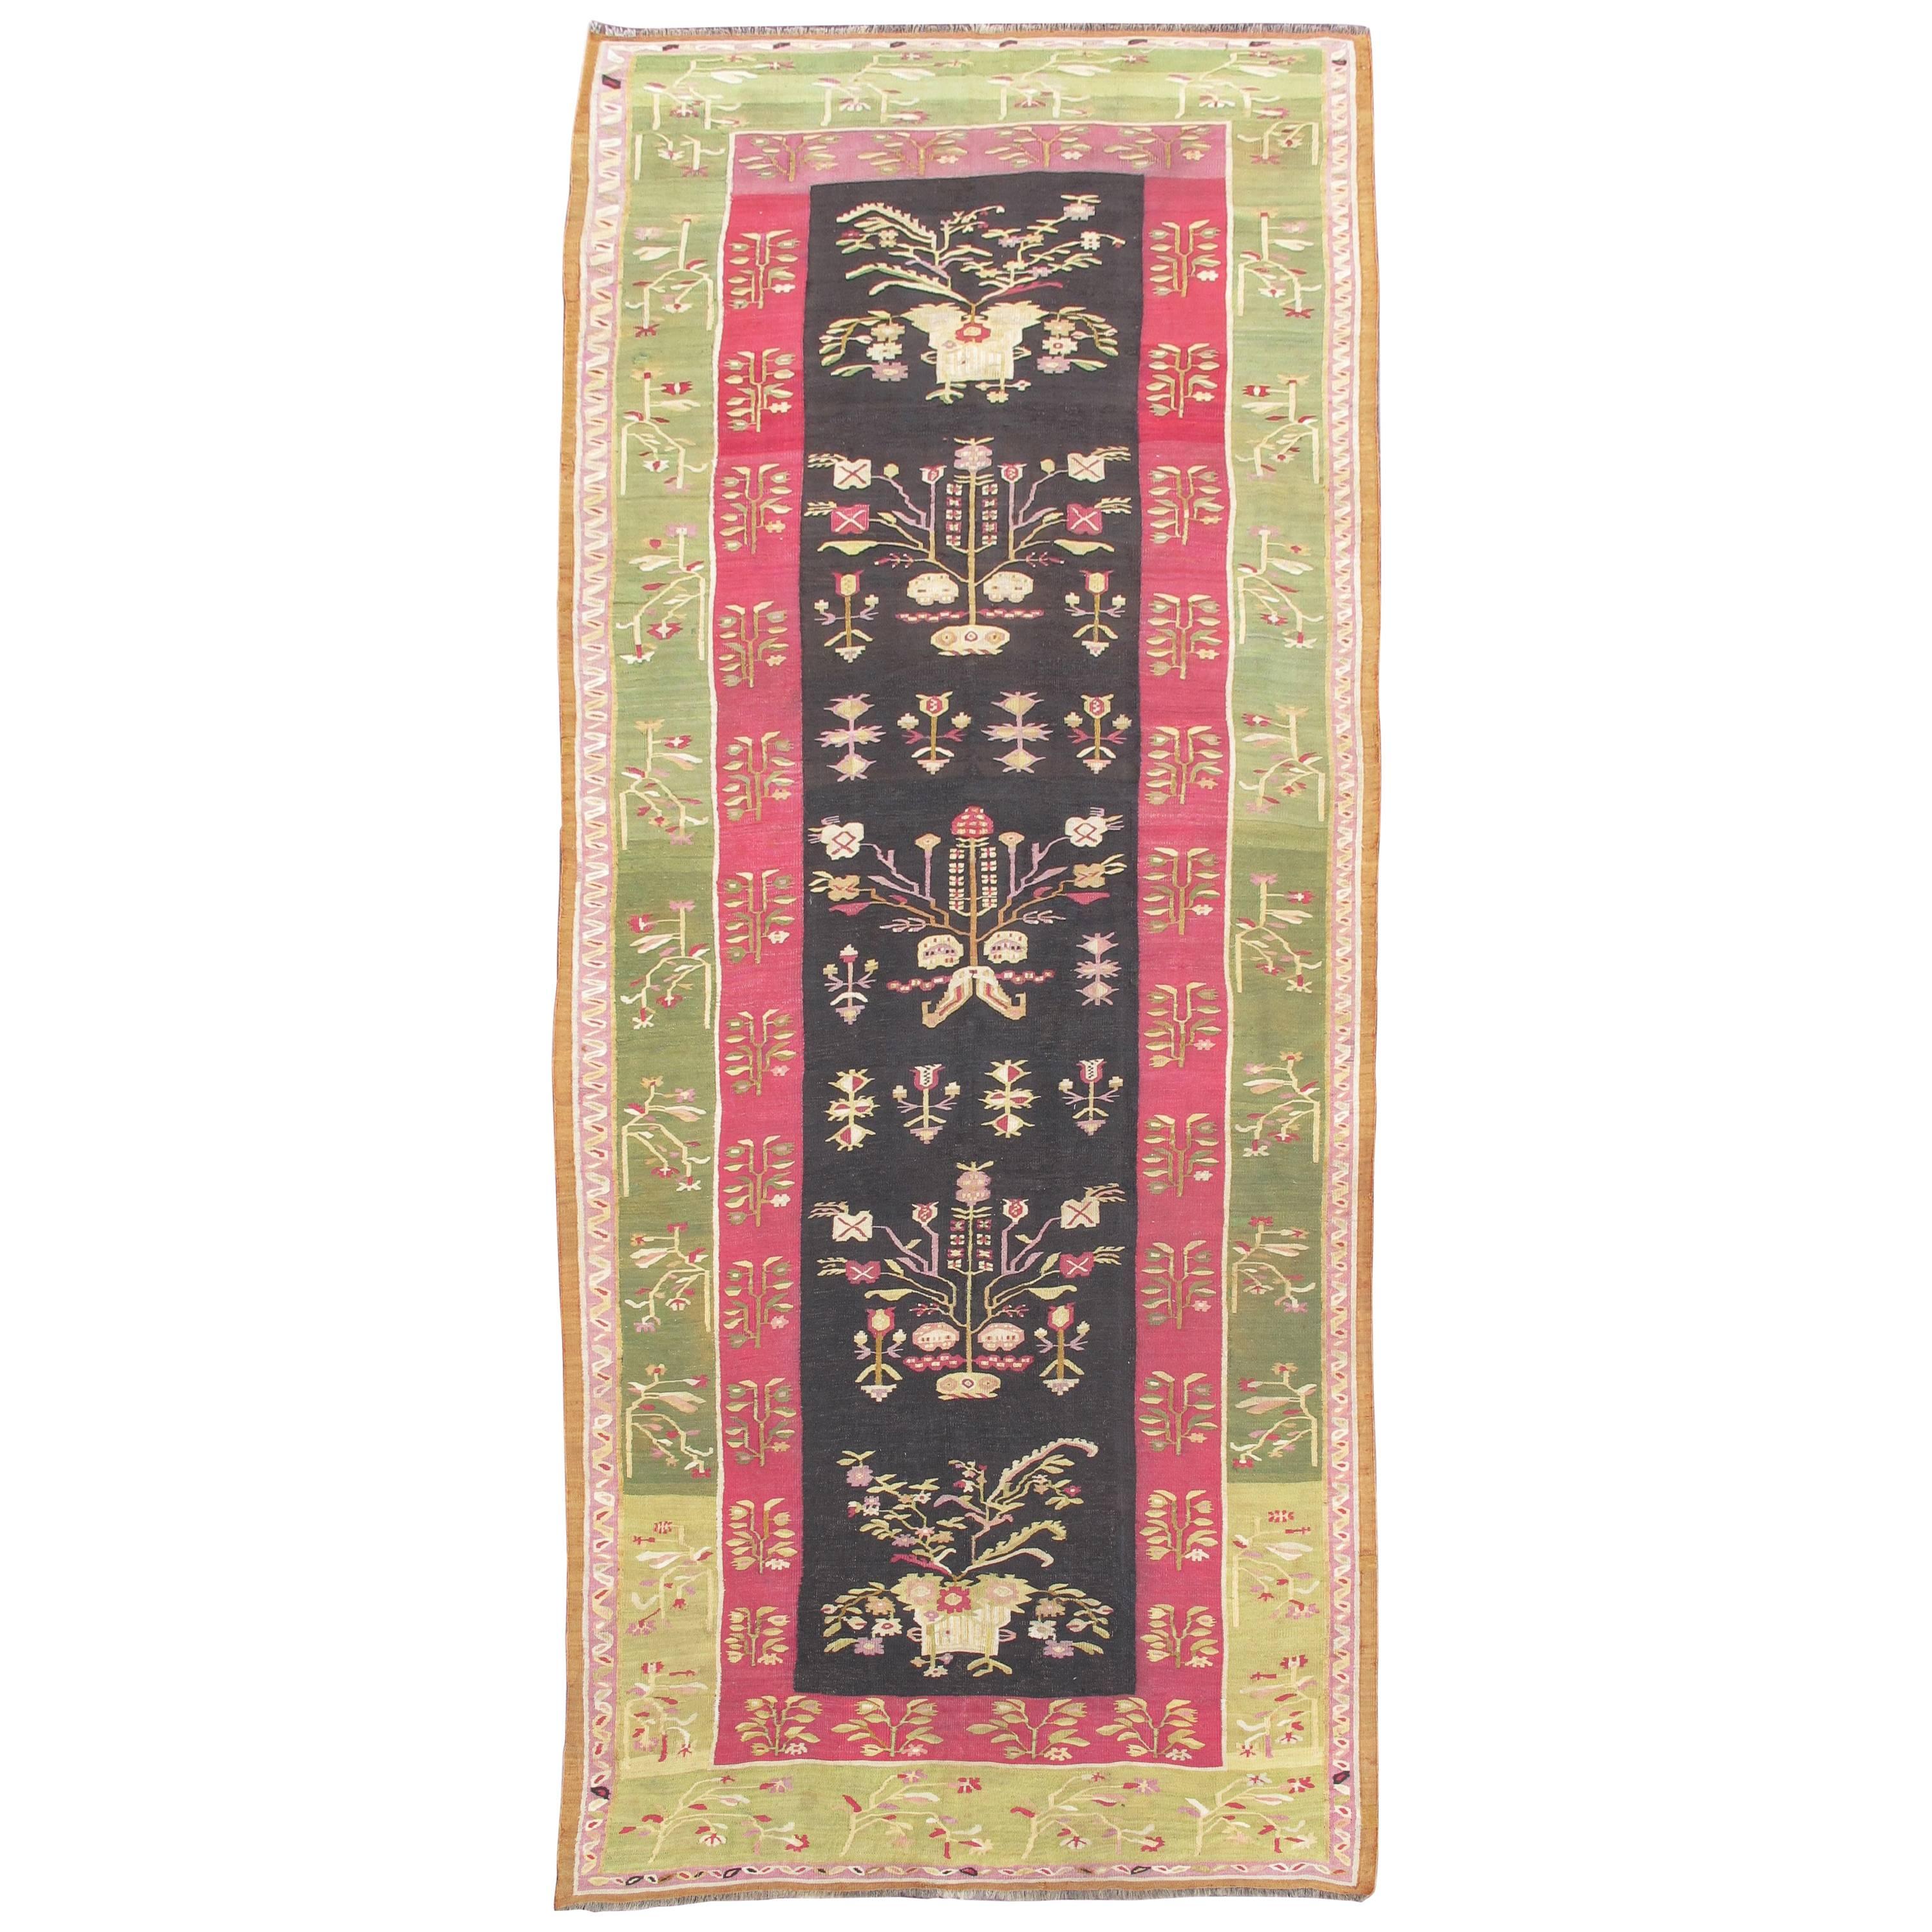 Tapis Kilim bessarabique floral exceptionnel du milieu du XIXᵉ siècle avec bordure vert clair en vente